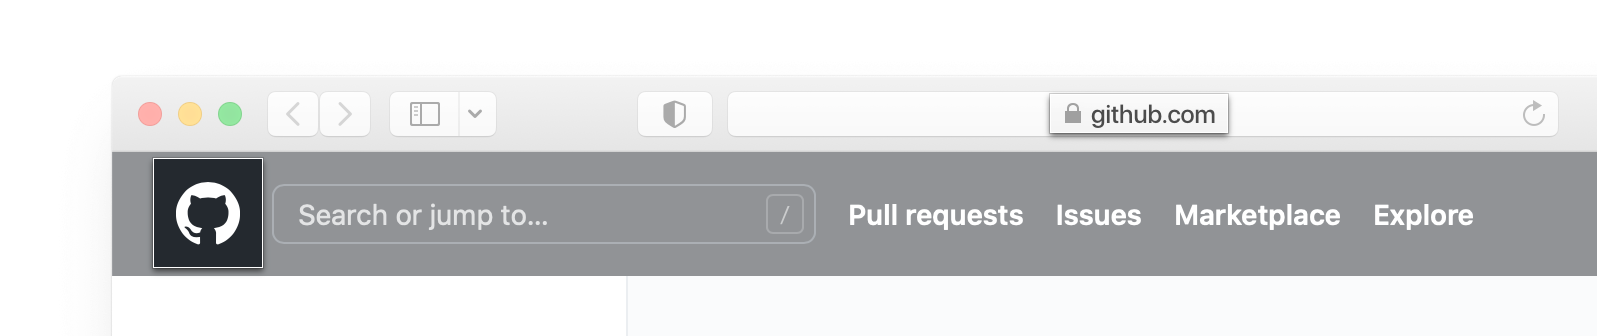 Captura de tela da barra de endereços e o header de GitHub.com em um navegador